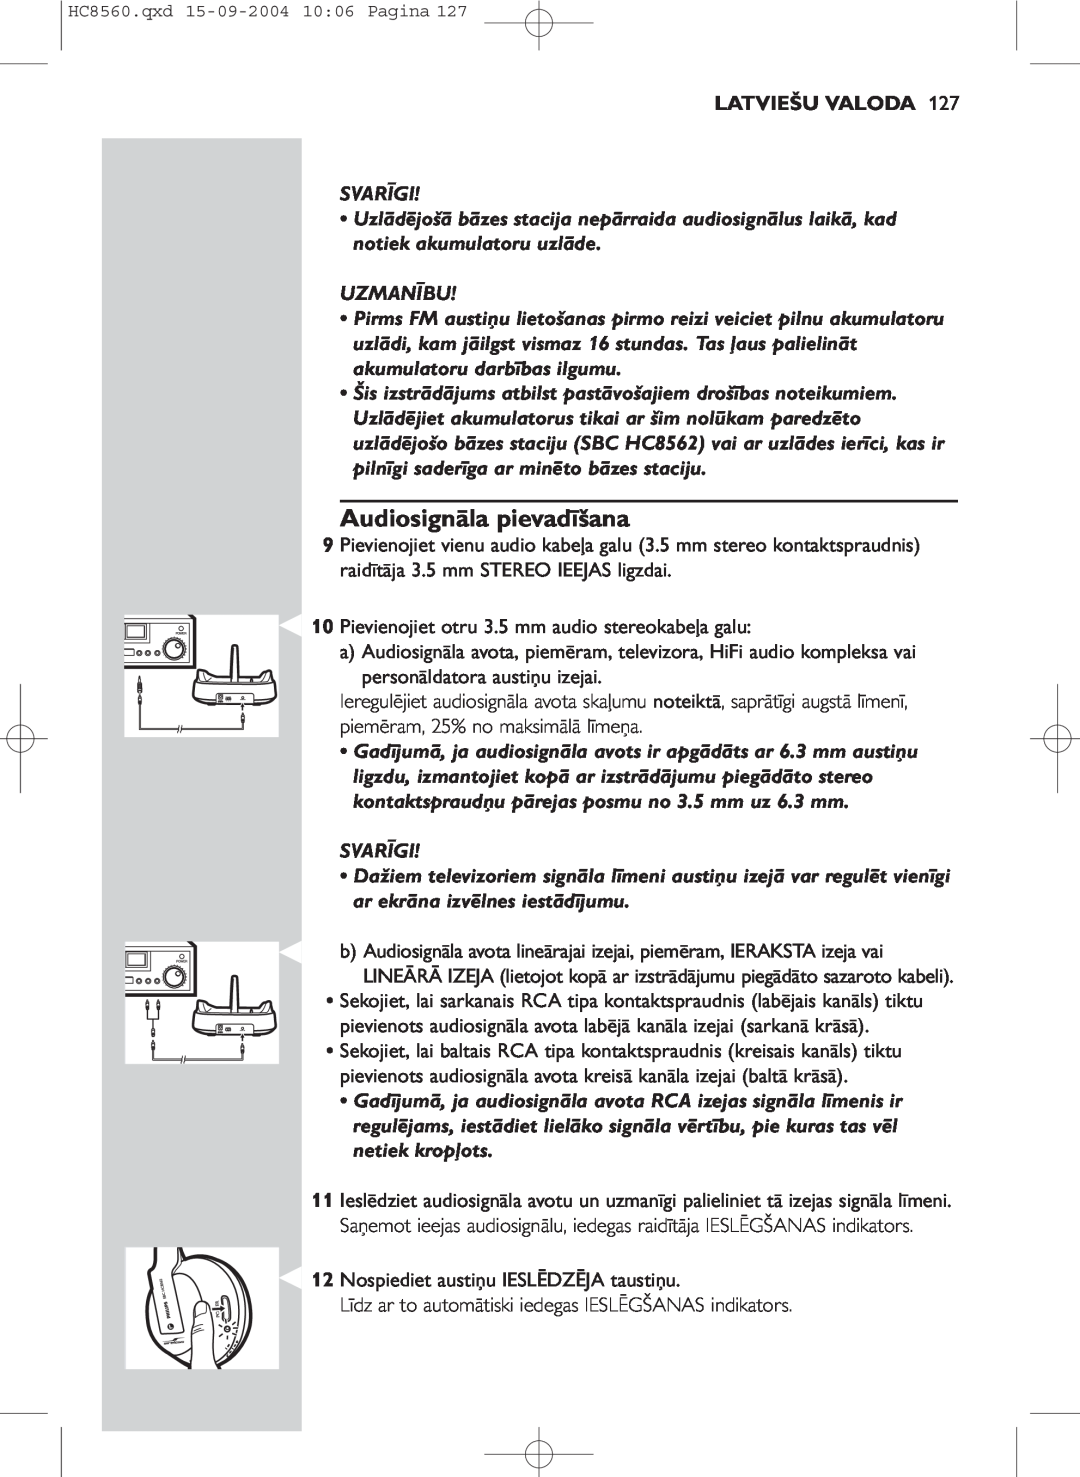 Philips HC 8560 manual Audiosignāla pievadīšana, Latviešu Valoda, Svarīgi, Uzmanību 